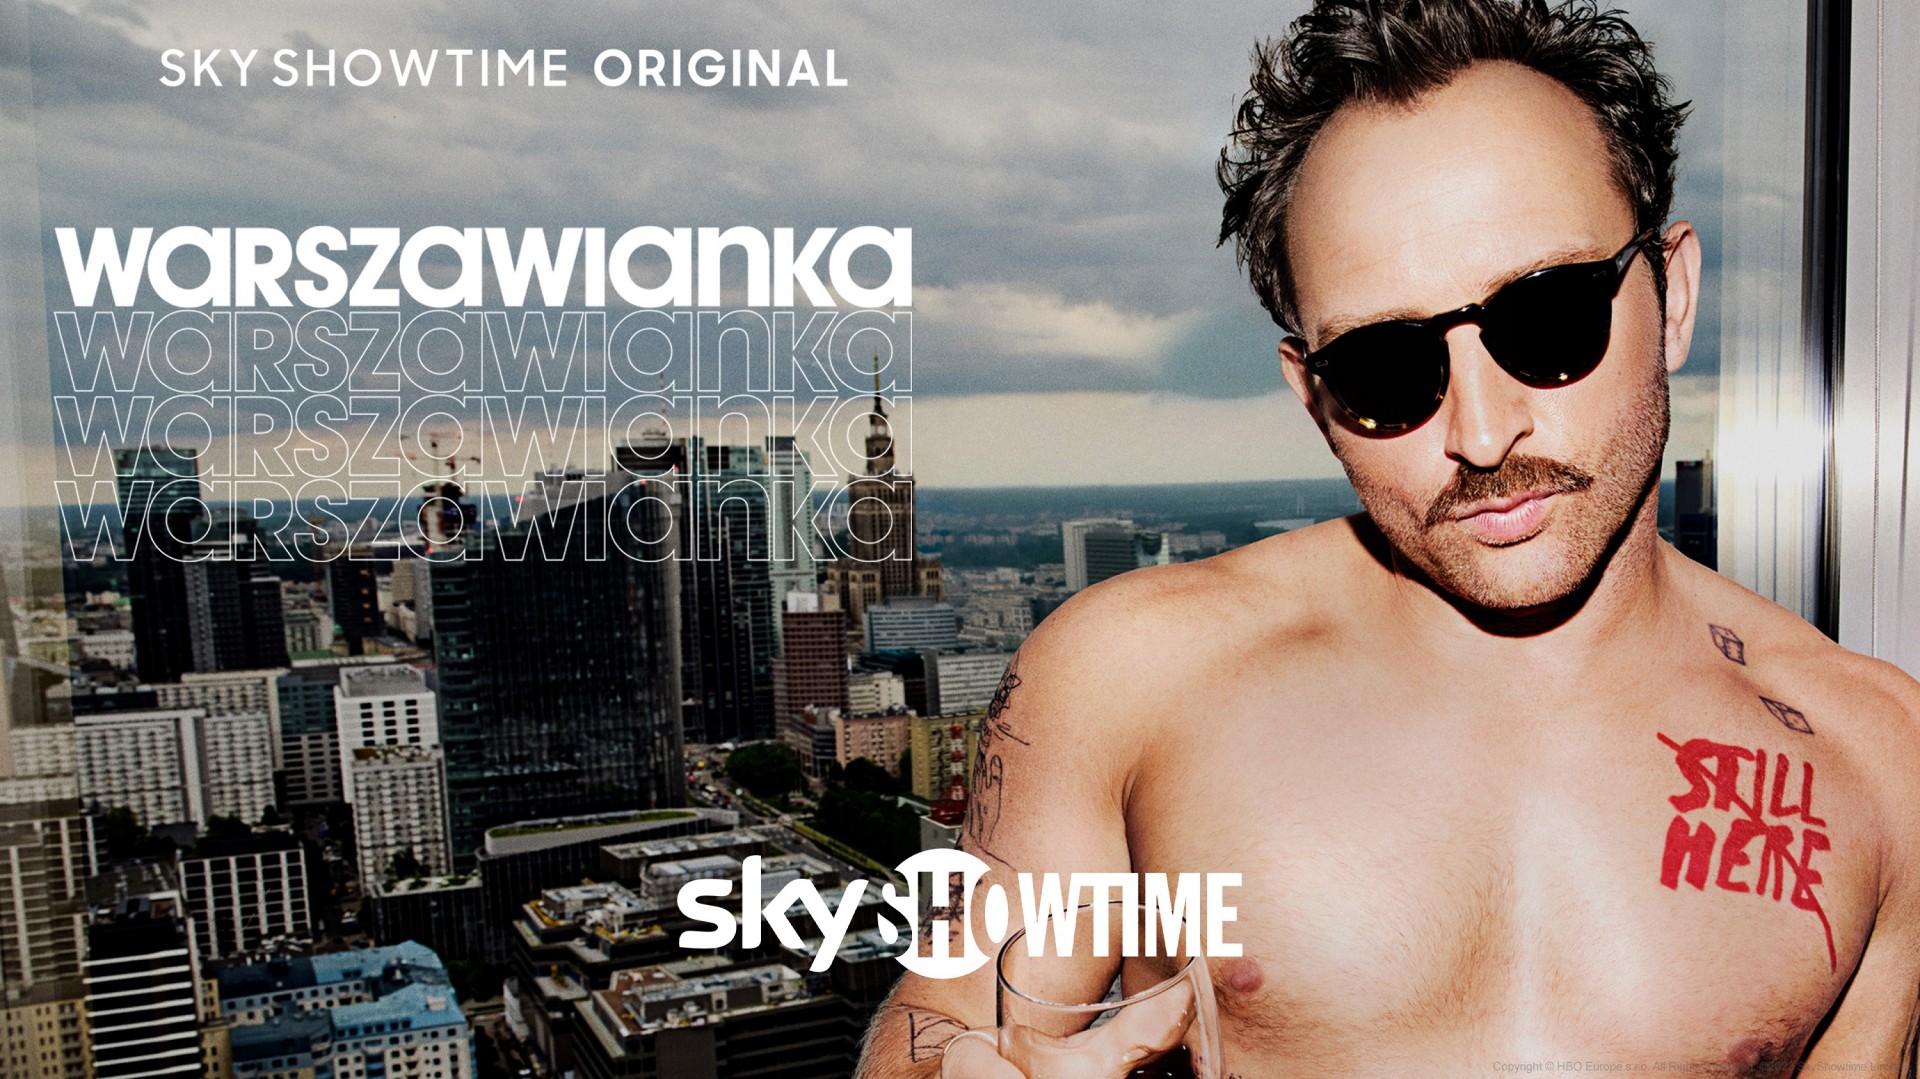 Погледнете ја „Warszawianka“ – првата оригинална серија на SkyShowtime од Централна и Источна Европа